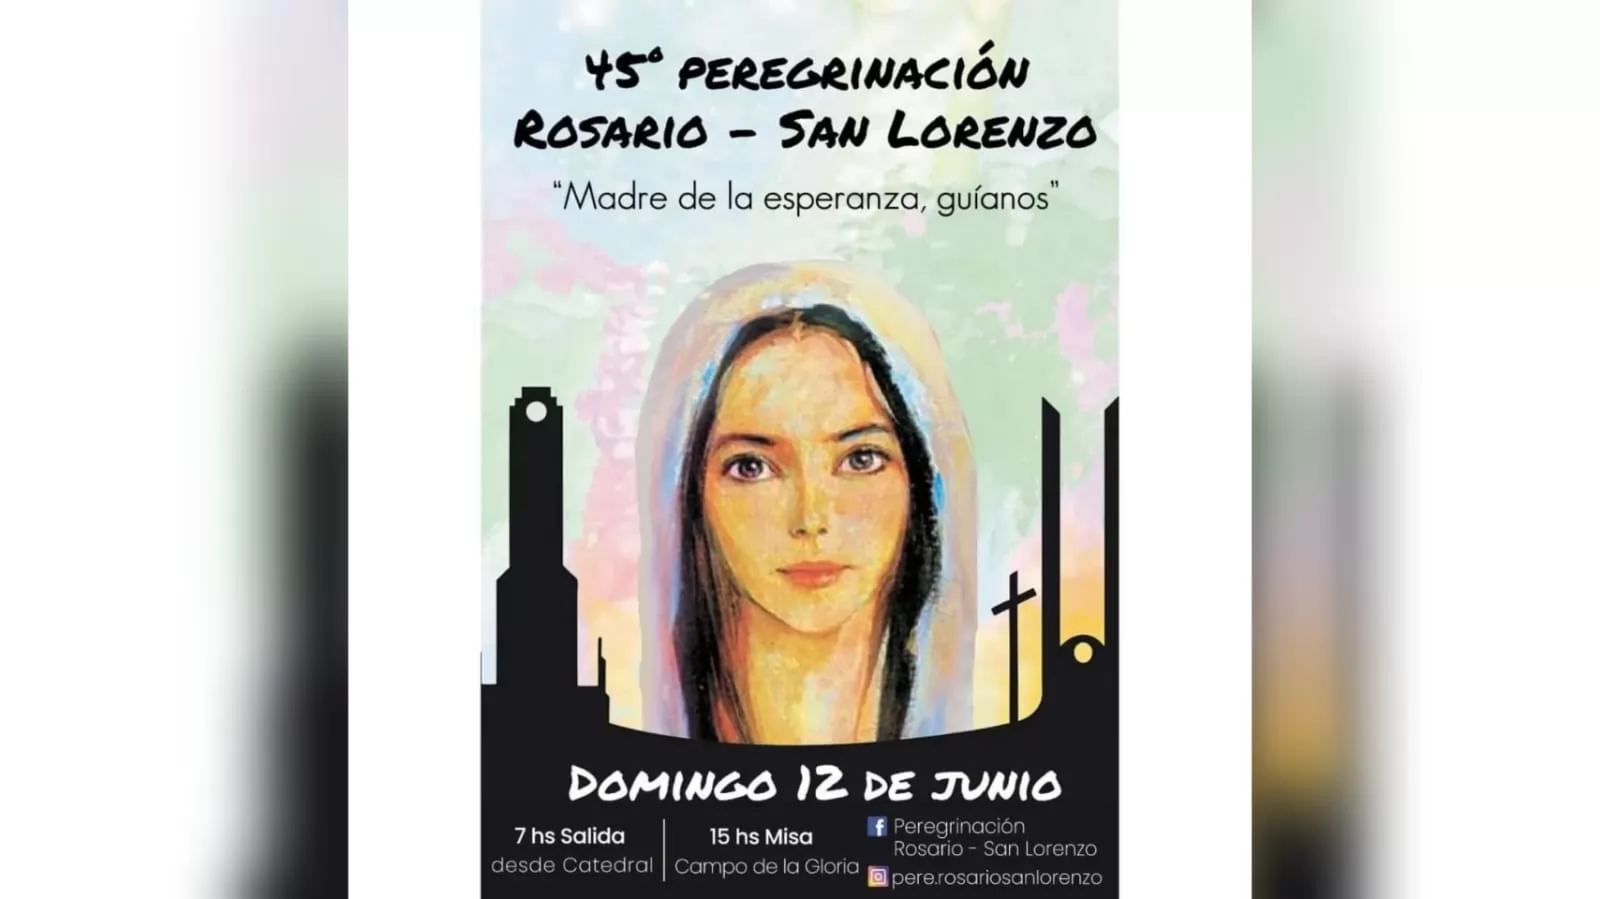 El próximo domingo se realizará la peregrinación Rosario - San Lorenzo 